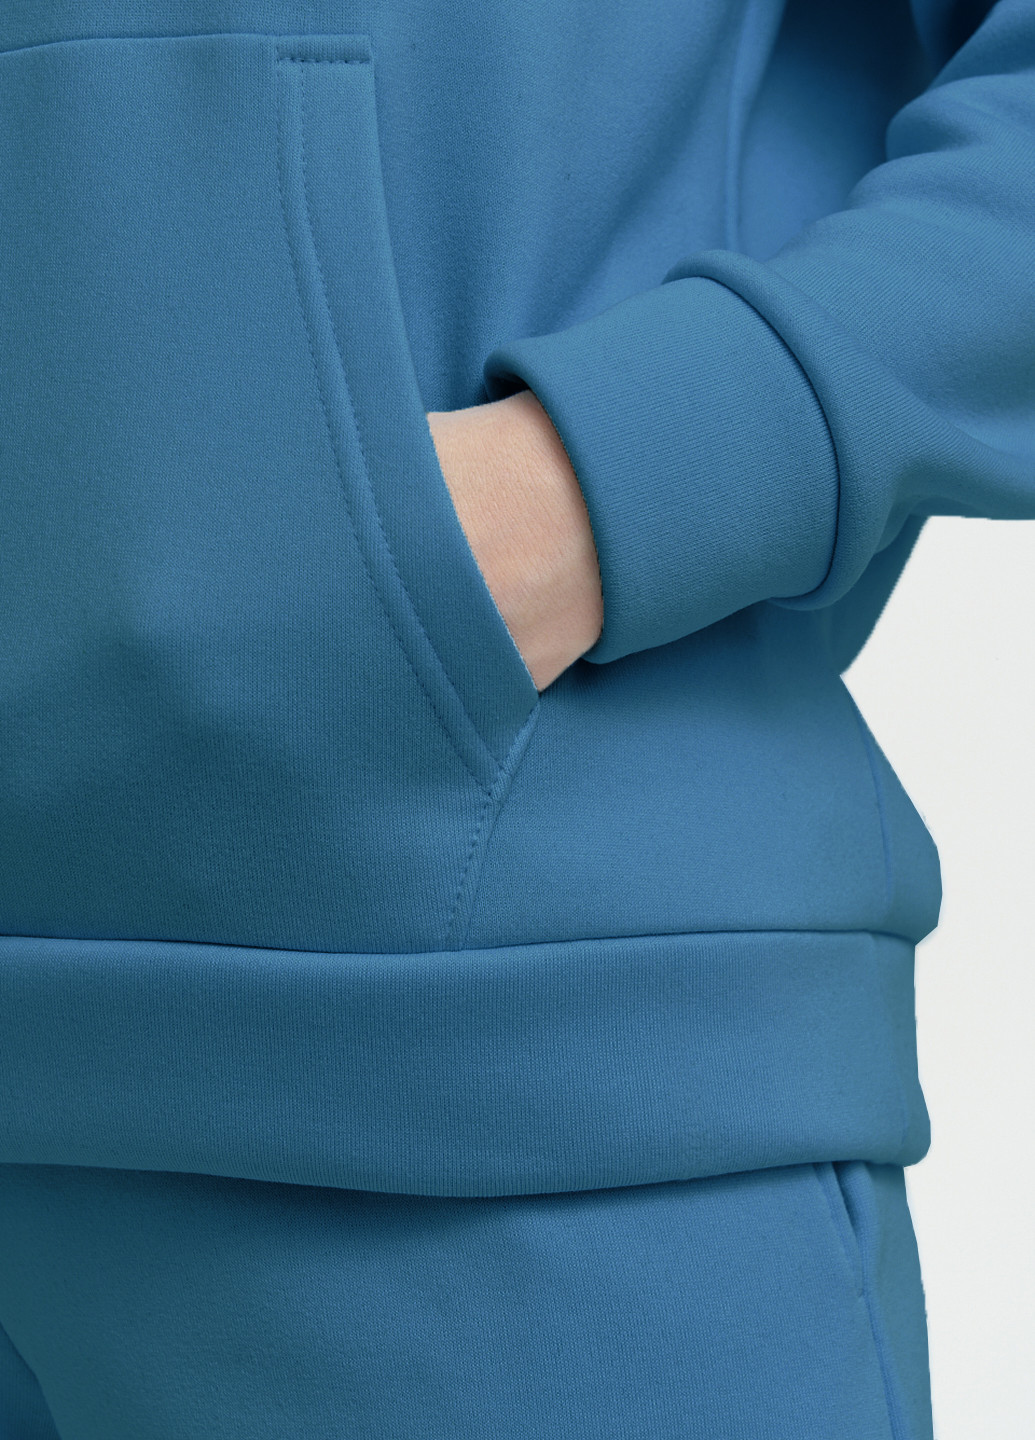 Худі жіночий на флісі KASTA design однотонні сині спортивні поліестер, фліс, футер